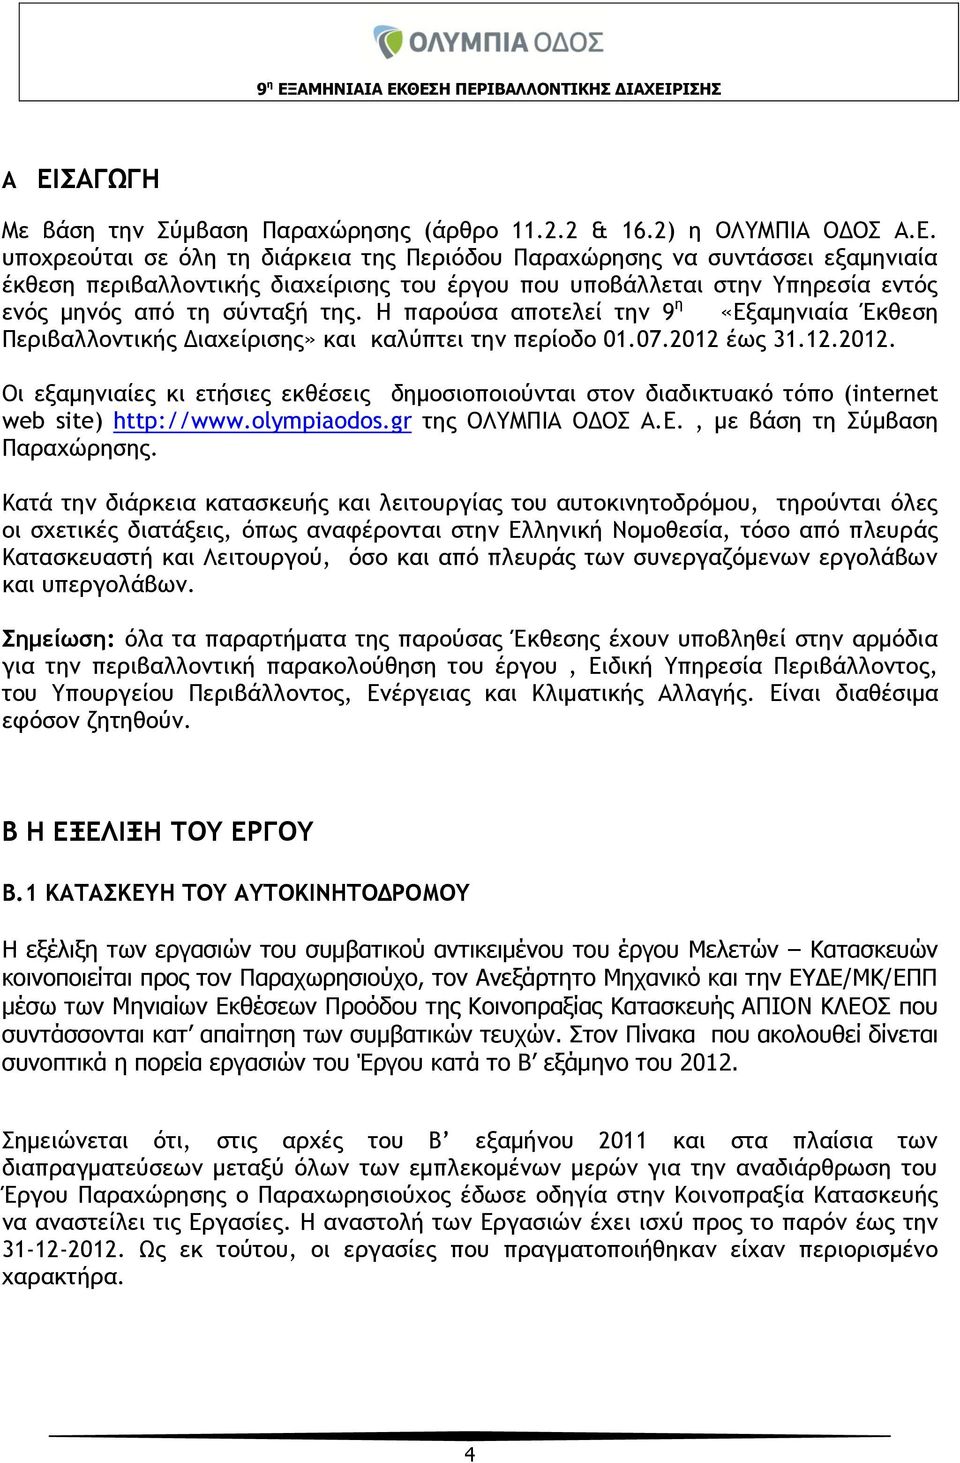 έως 31.12.2012. Οι εξαμηνιαίες κι ετήσιες εκθέσεις δημοσιοποιούνται στον διαδικτυακό τόπο (internet web site) http://www.olympiaodos.gr της ΟΛΥΜΠΙΑ ΟΔΟΣ Α.Ε., με βάση τη Σύμβαση Παραχώρησης.